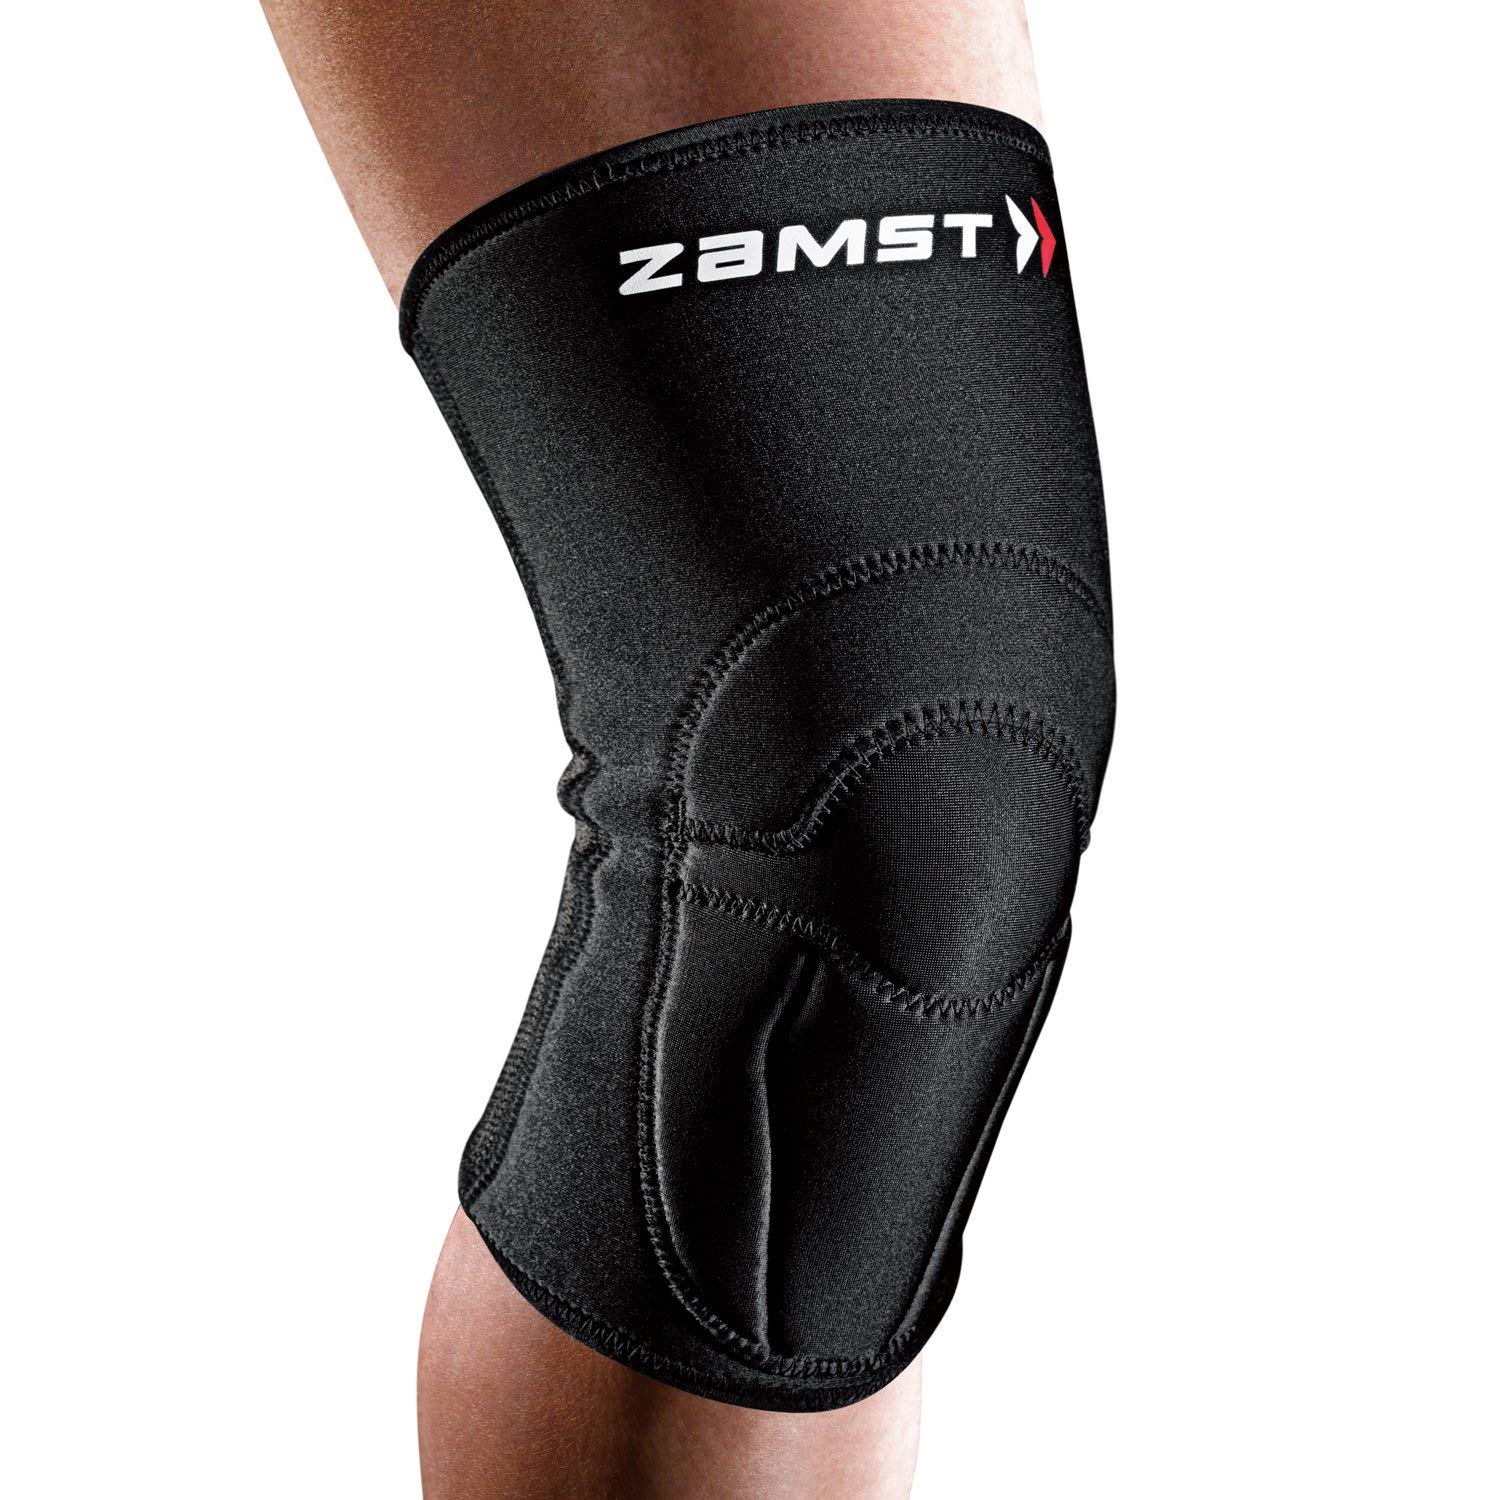 膝用サポーターのおすすめ5選 保温機能付きも Heim ハイム